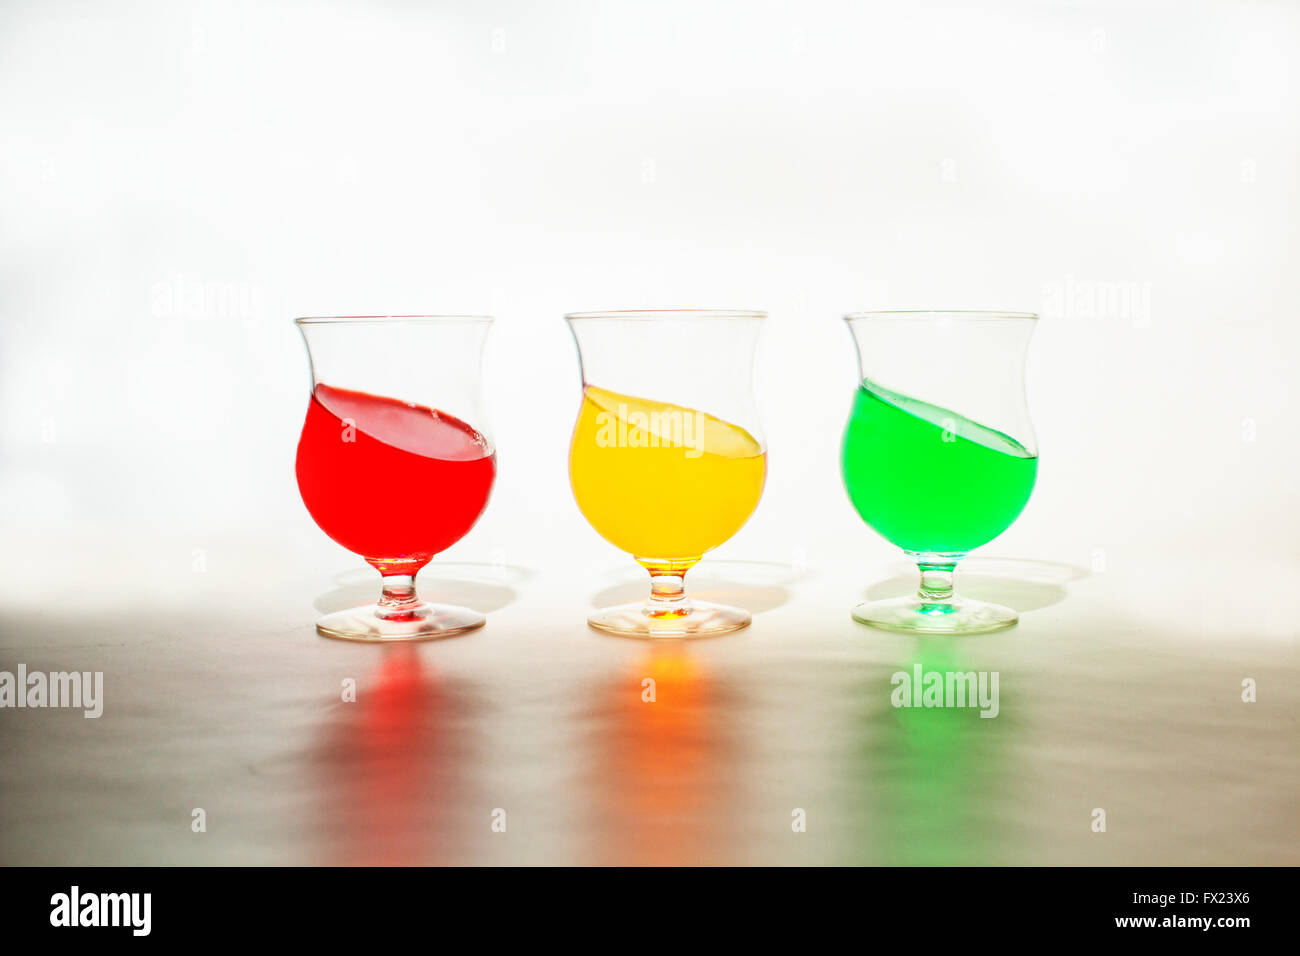 Rosso, giallo e verde di gelatina in bicchieri. La gelatina è inclinata per dare un aspetto divertente per l'immagine. Foto Stock